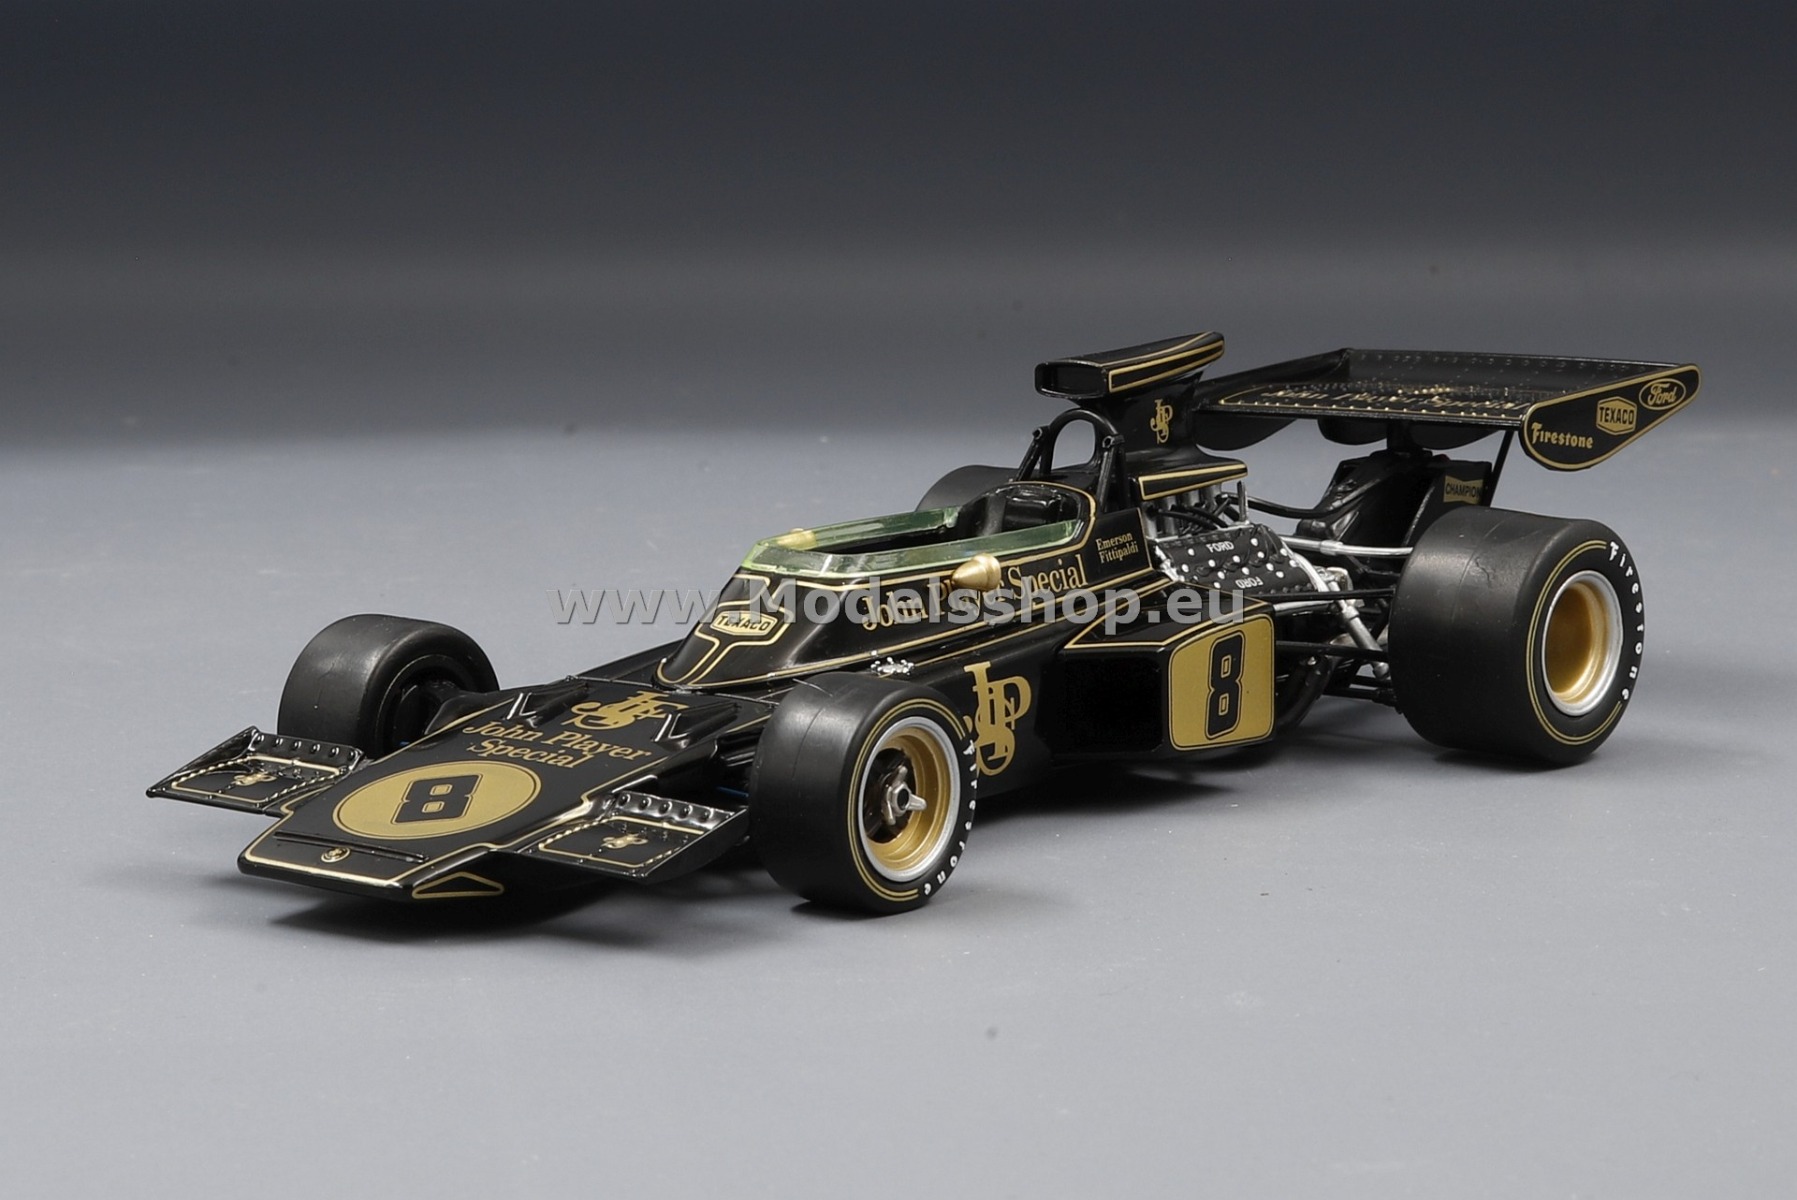 IXO24F003 Lotus 72D, No.8, Fformula 1, GP Great Britain 1972 E.Fittipaldi